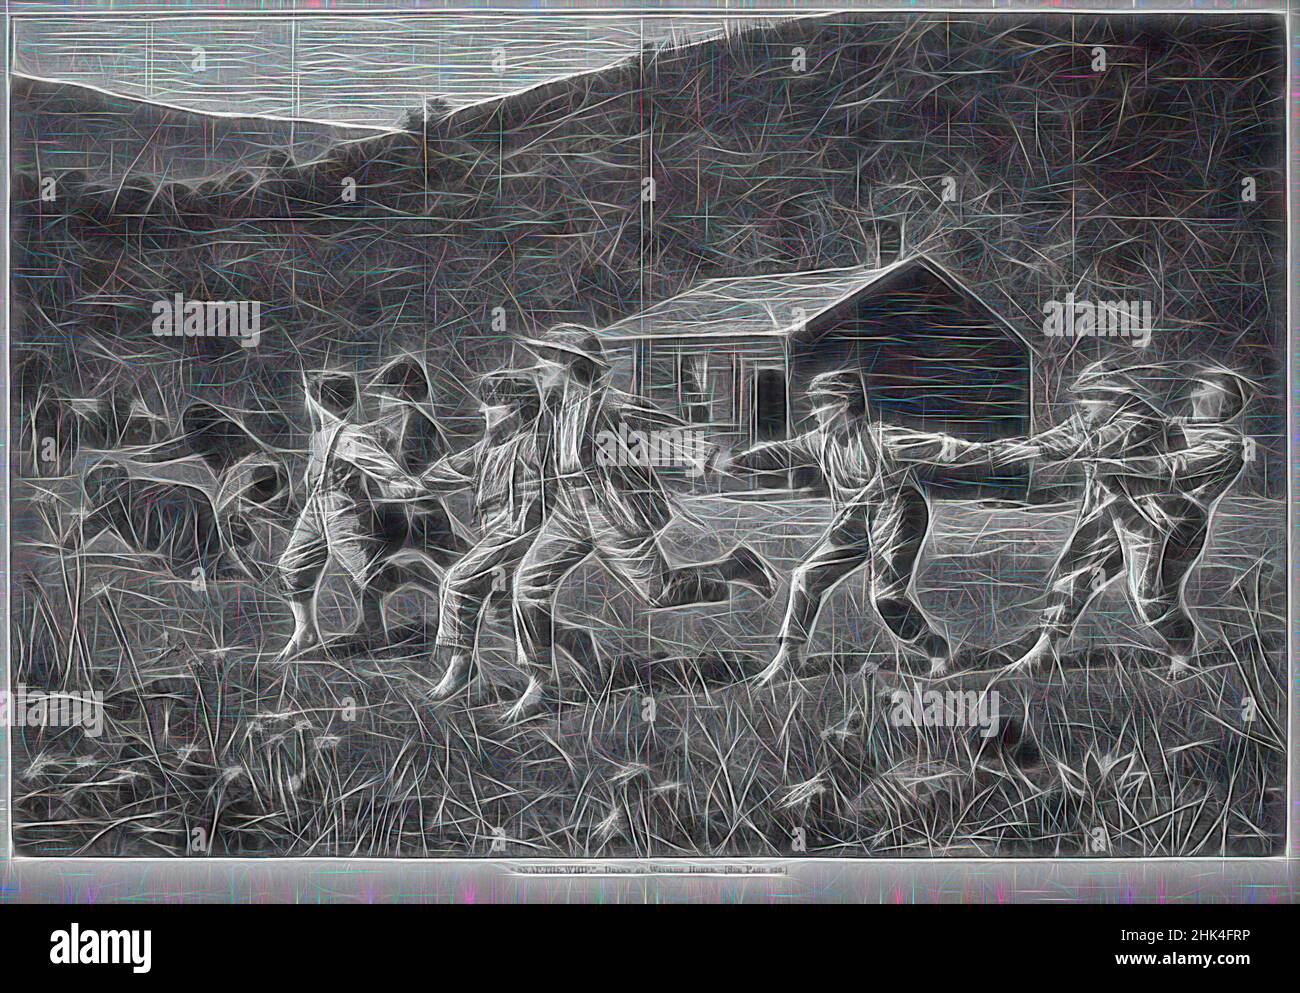 Inspiré par Snap-the-Whip', Winslow Homer, cuisine américaine, 1836-1910, gravure sur bois, 1873, image: 13 3/4 x 20 3/4 po., 34,9 x 52,7 cm, repensé par Artotop. L'art classique réinventé avec une touche moderne. Conception de lumière chaleureuse et gaie, de luminosité et de rayonnement de lumière. La photographie s'inspire du surréalisme et du futurisme, embrassant l'énergie dynamique de la technologie moderne, du mouvement, de la vitesse et révolutionne la culture Banque D'Images